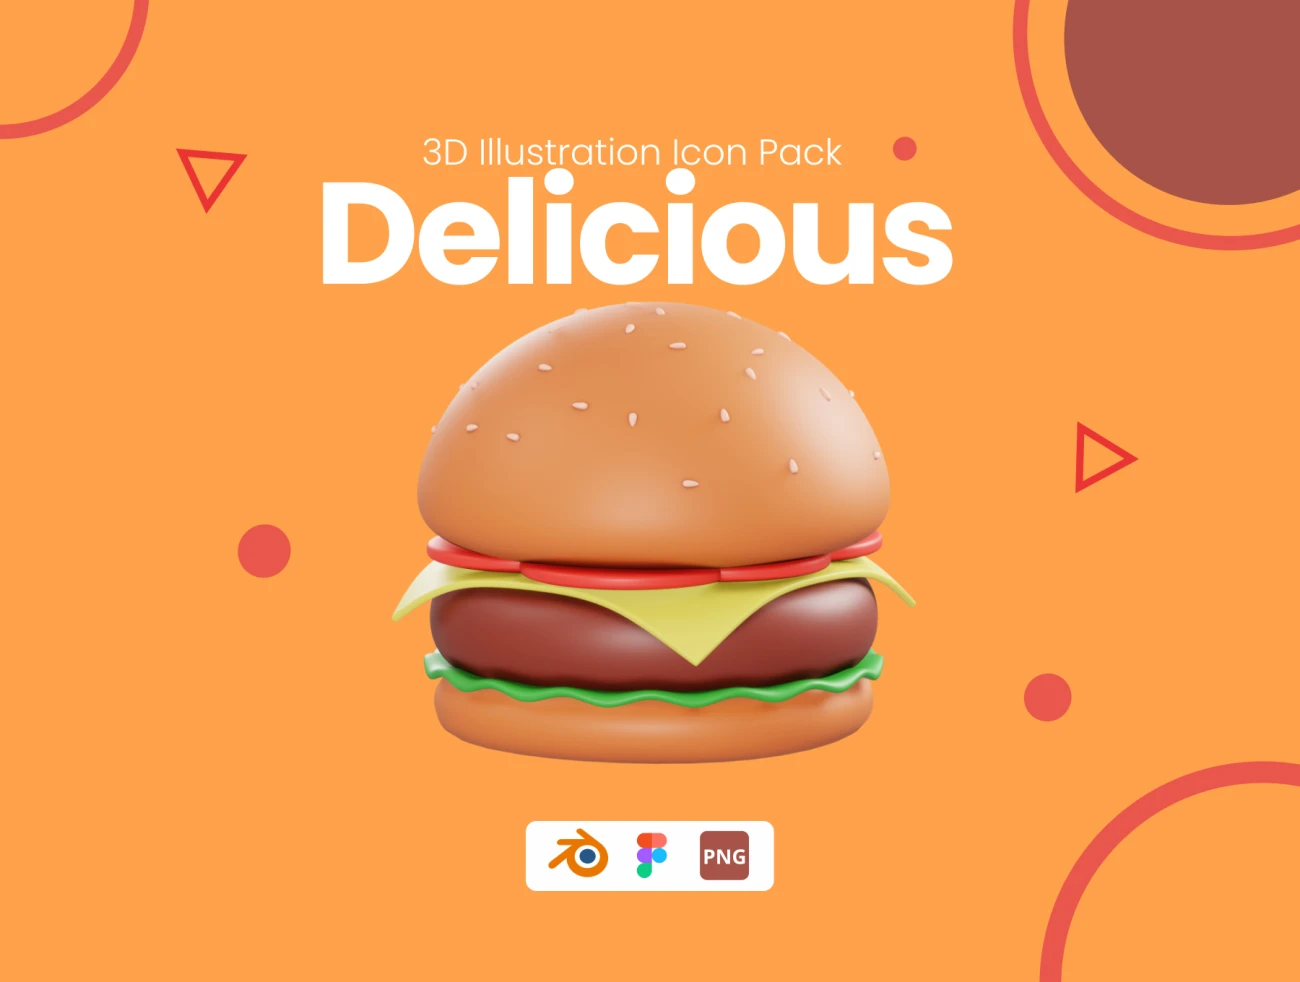 25款美食3D模型素材下载 Delicious – 3D Illustration Icon Pack  .blender .figma插图1